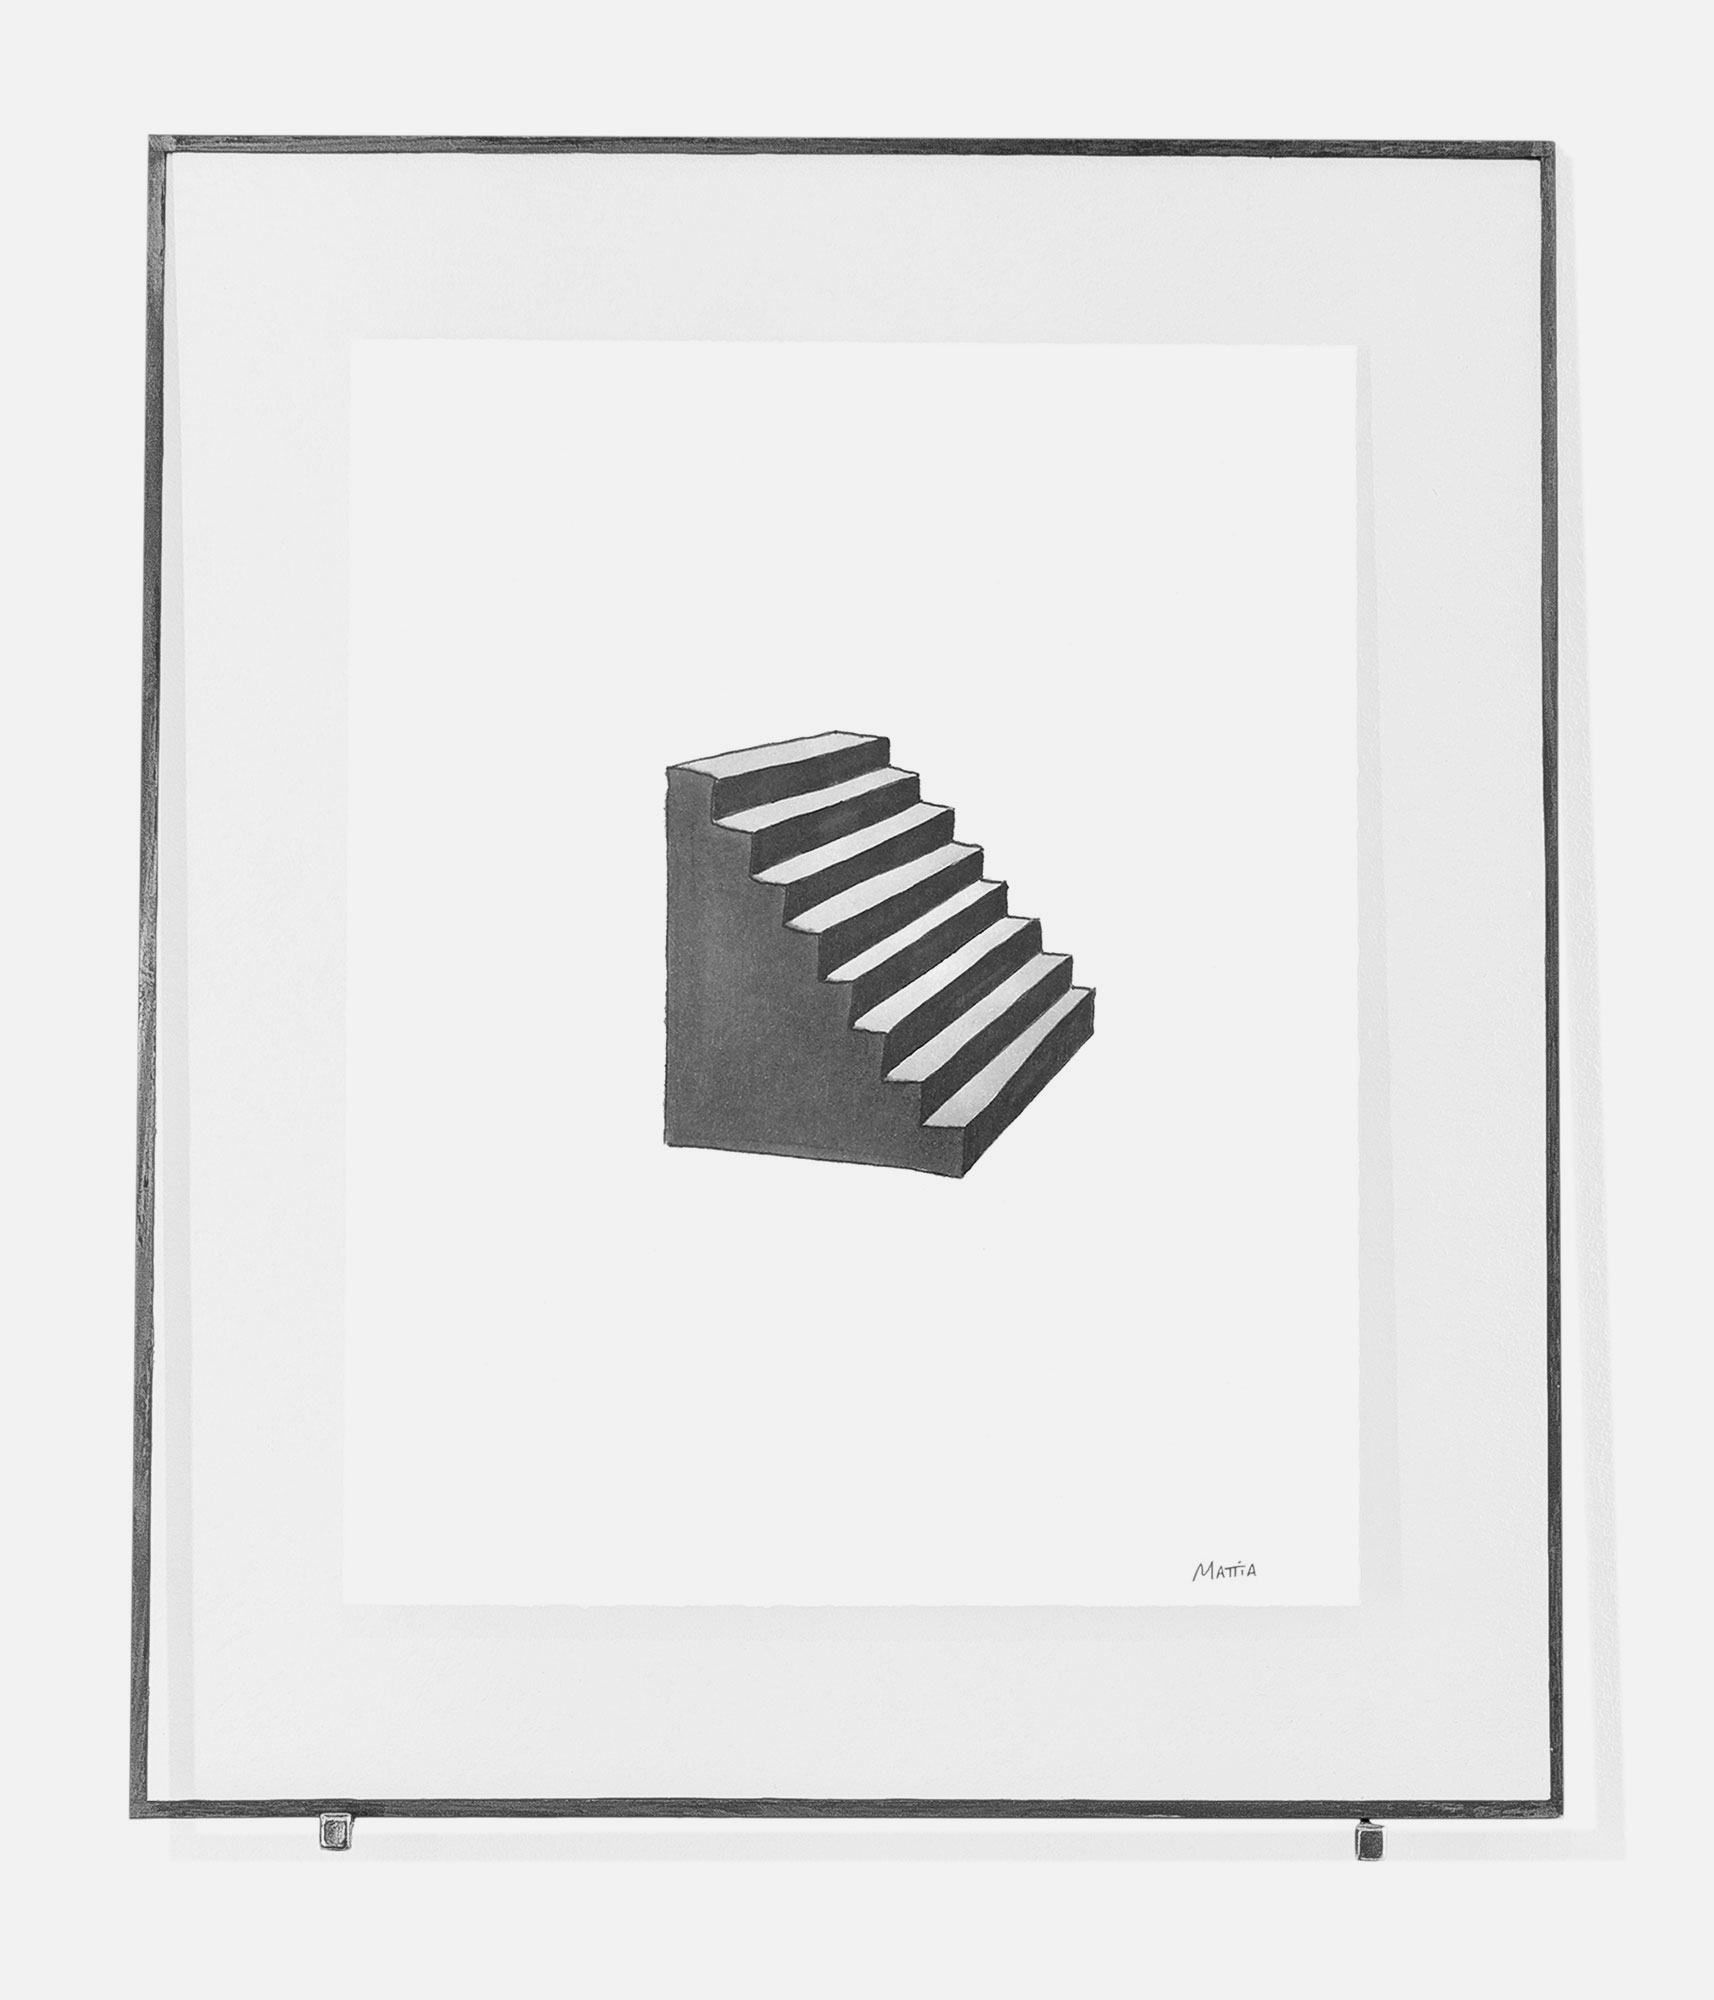 mattia listowski art décoration architecture design dessin réversible encre feutre à alcool bic noir et blanc objet oeuvre édition limitée signée paris bruxelles 2021